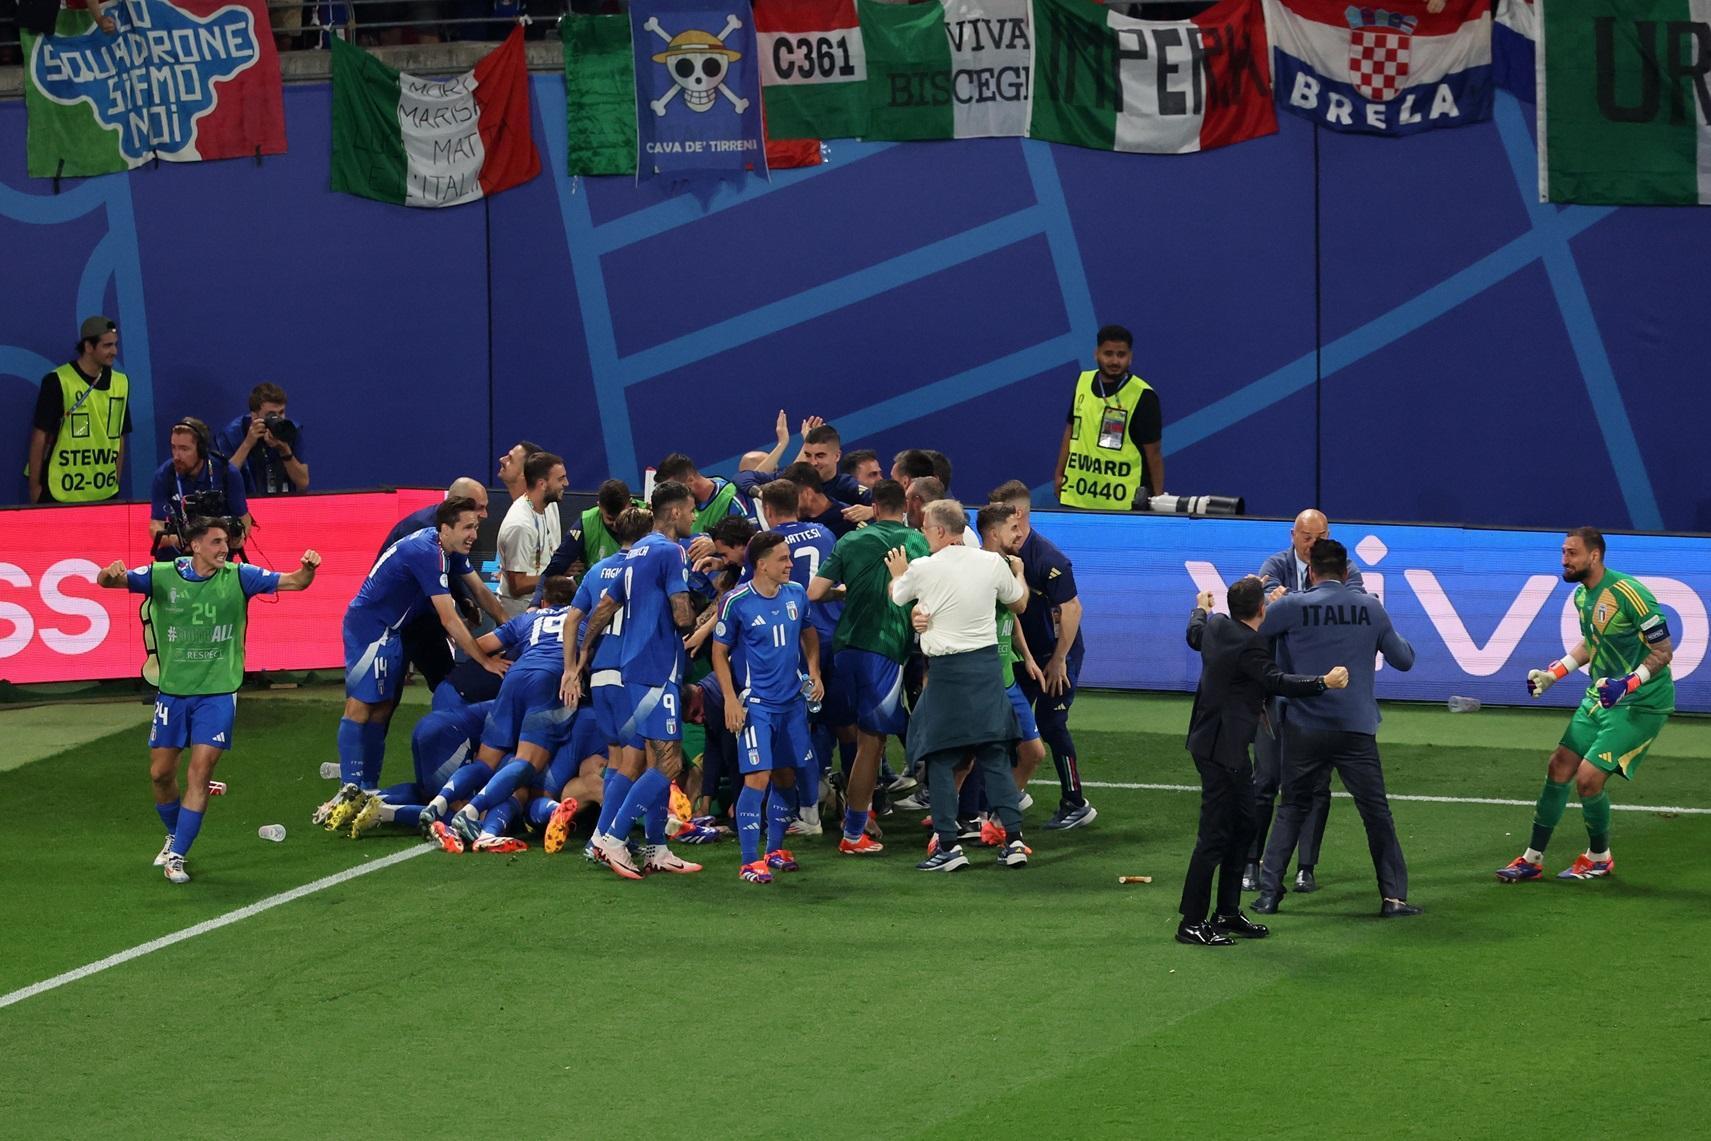 İtalya son saniyede attı, Hırvatistan’ın şansı mucizelere kaldı